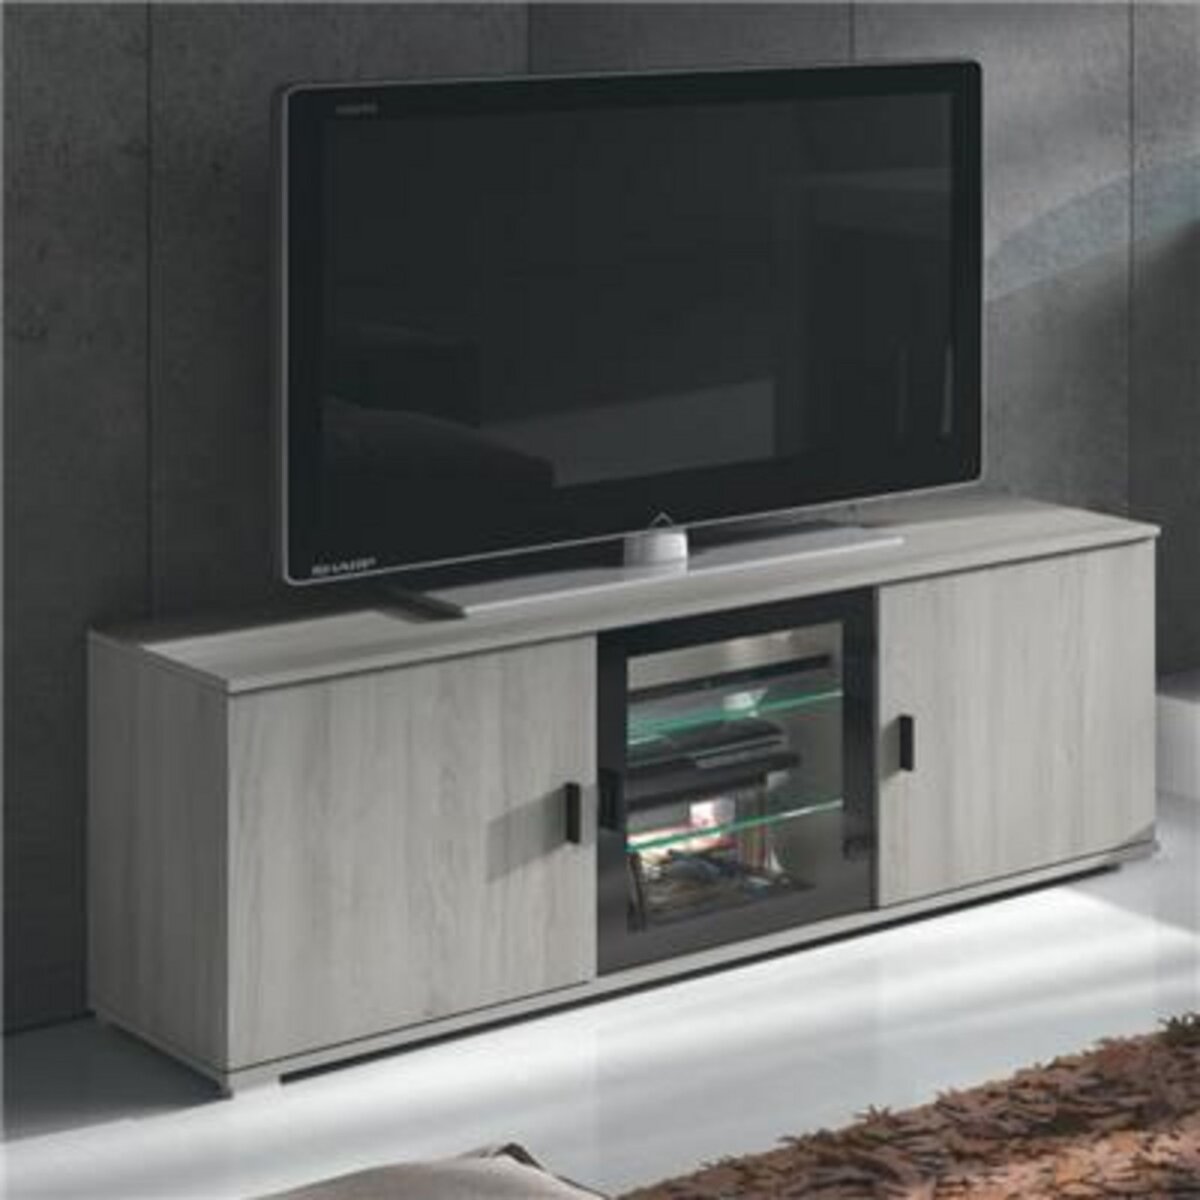 KASALINEA Banc TV 135 cm contemporain couleur chêne gris SOPHIE-L 135 x P 39,5 x H 55 cm- Gris